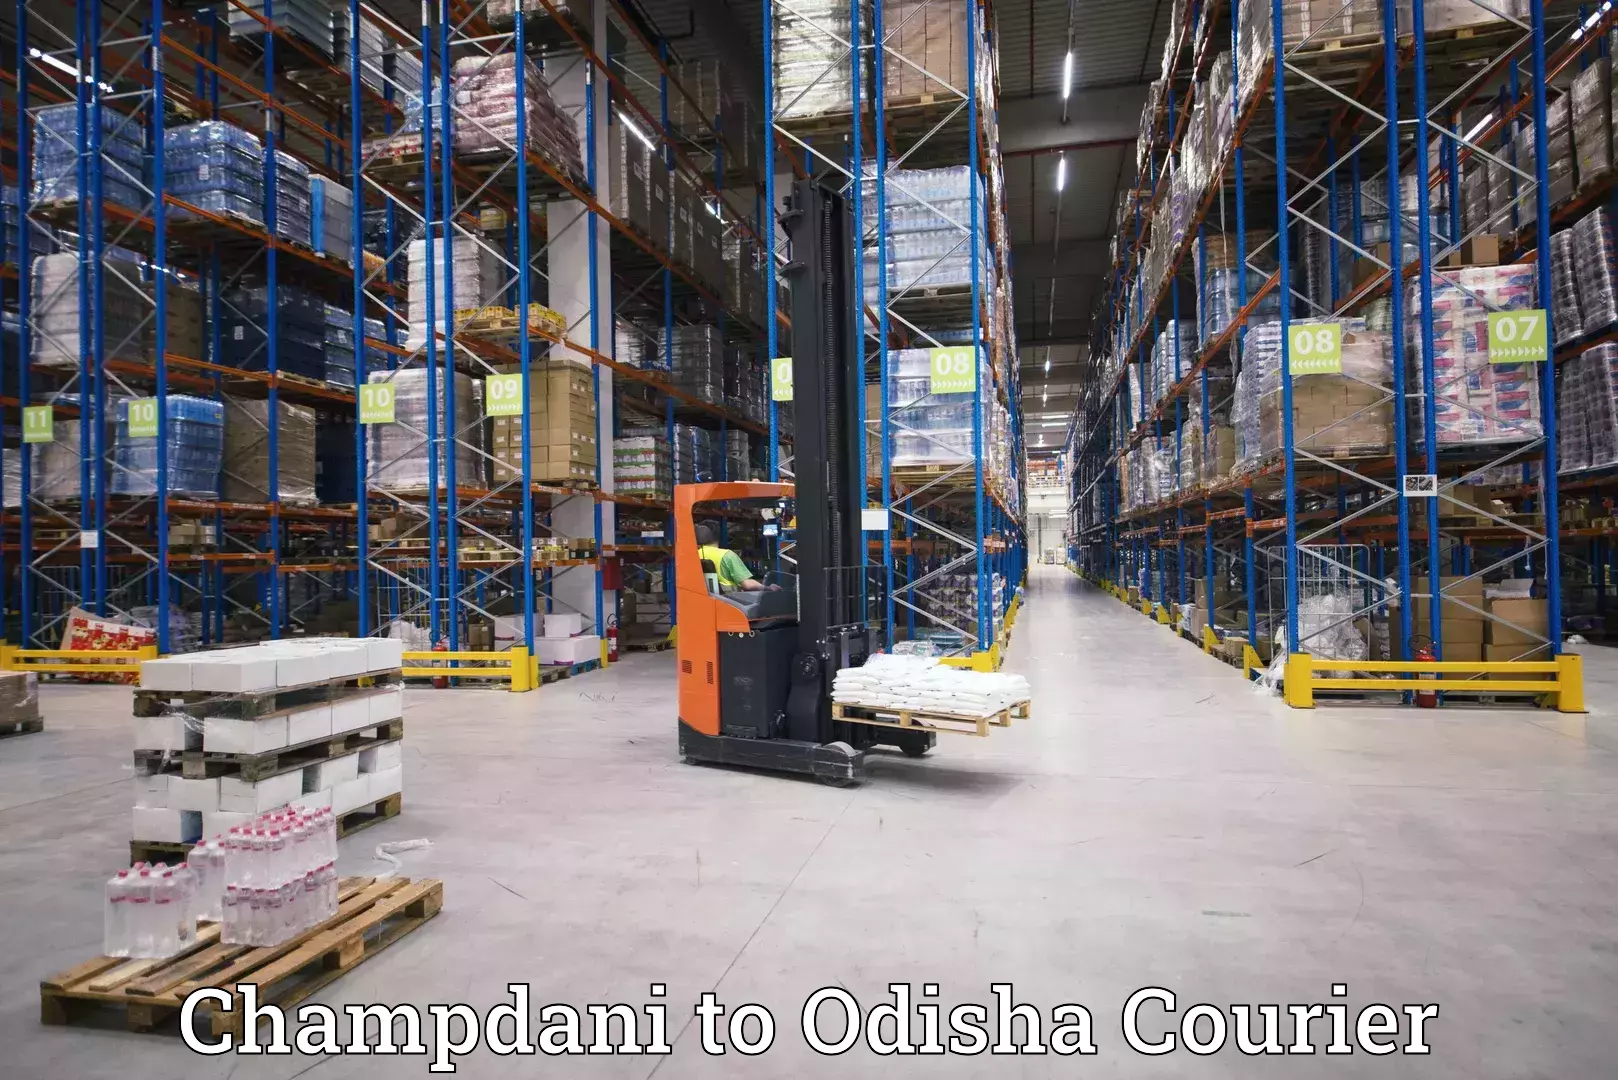 Smart logistics strategies Champdani to Rajgangpur